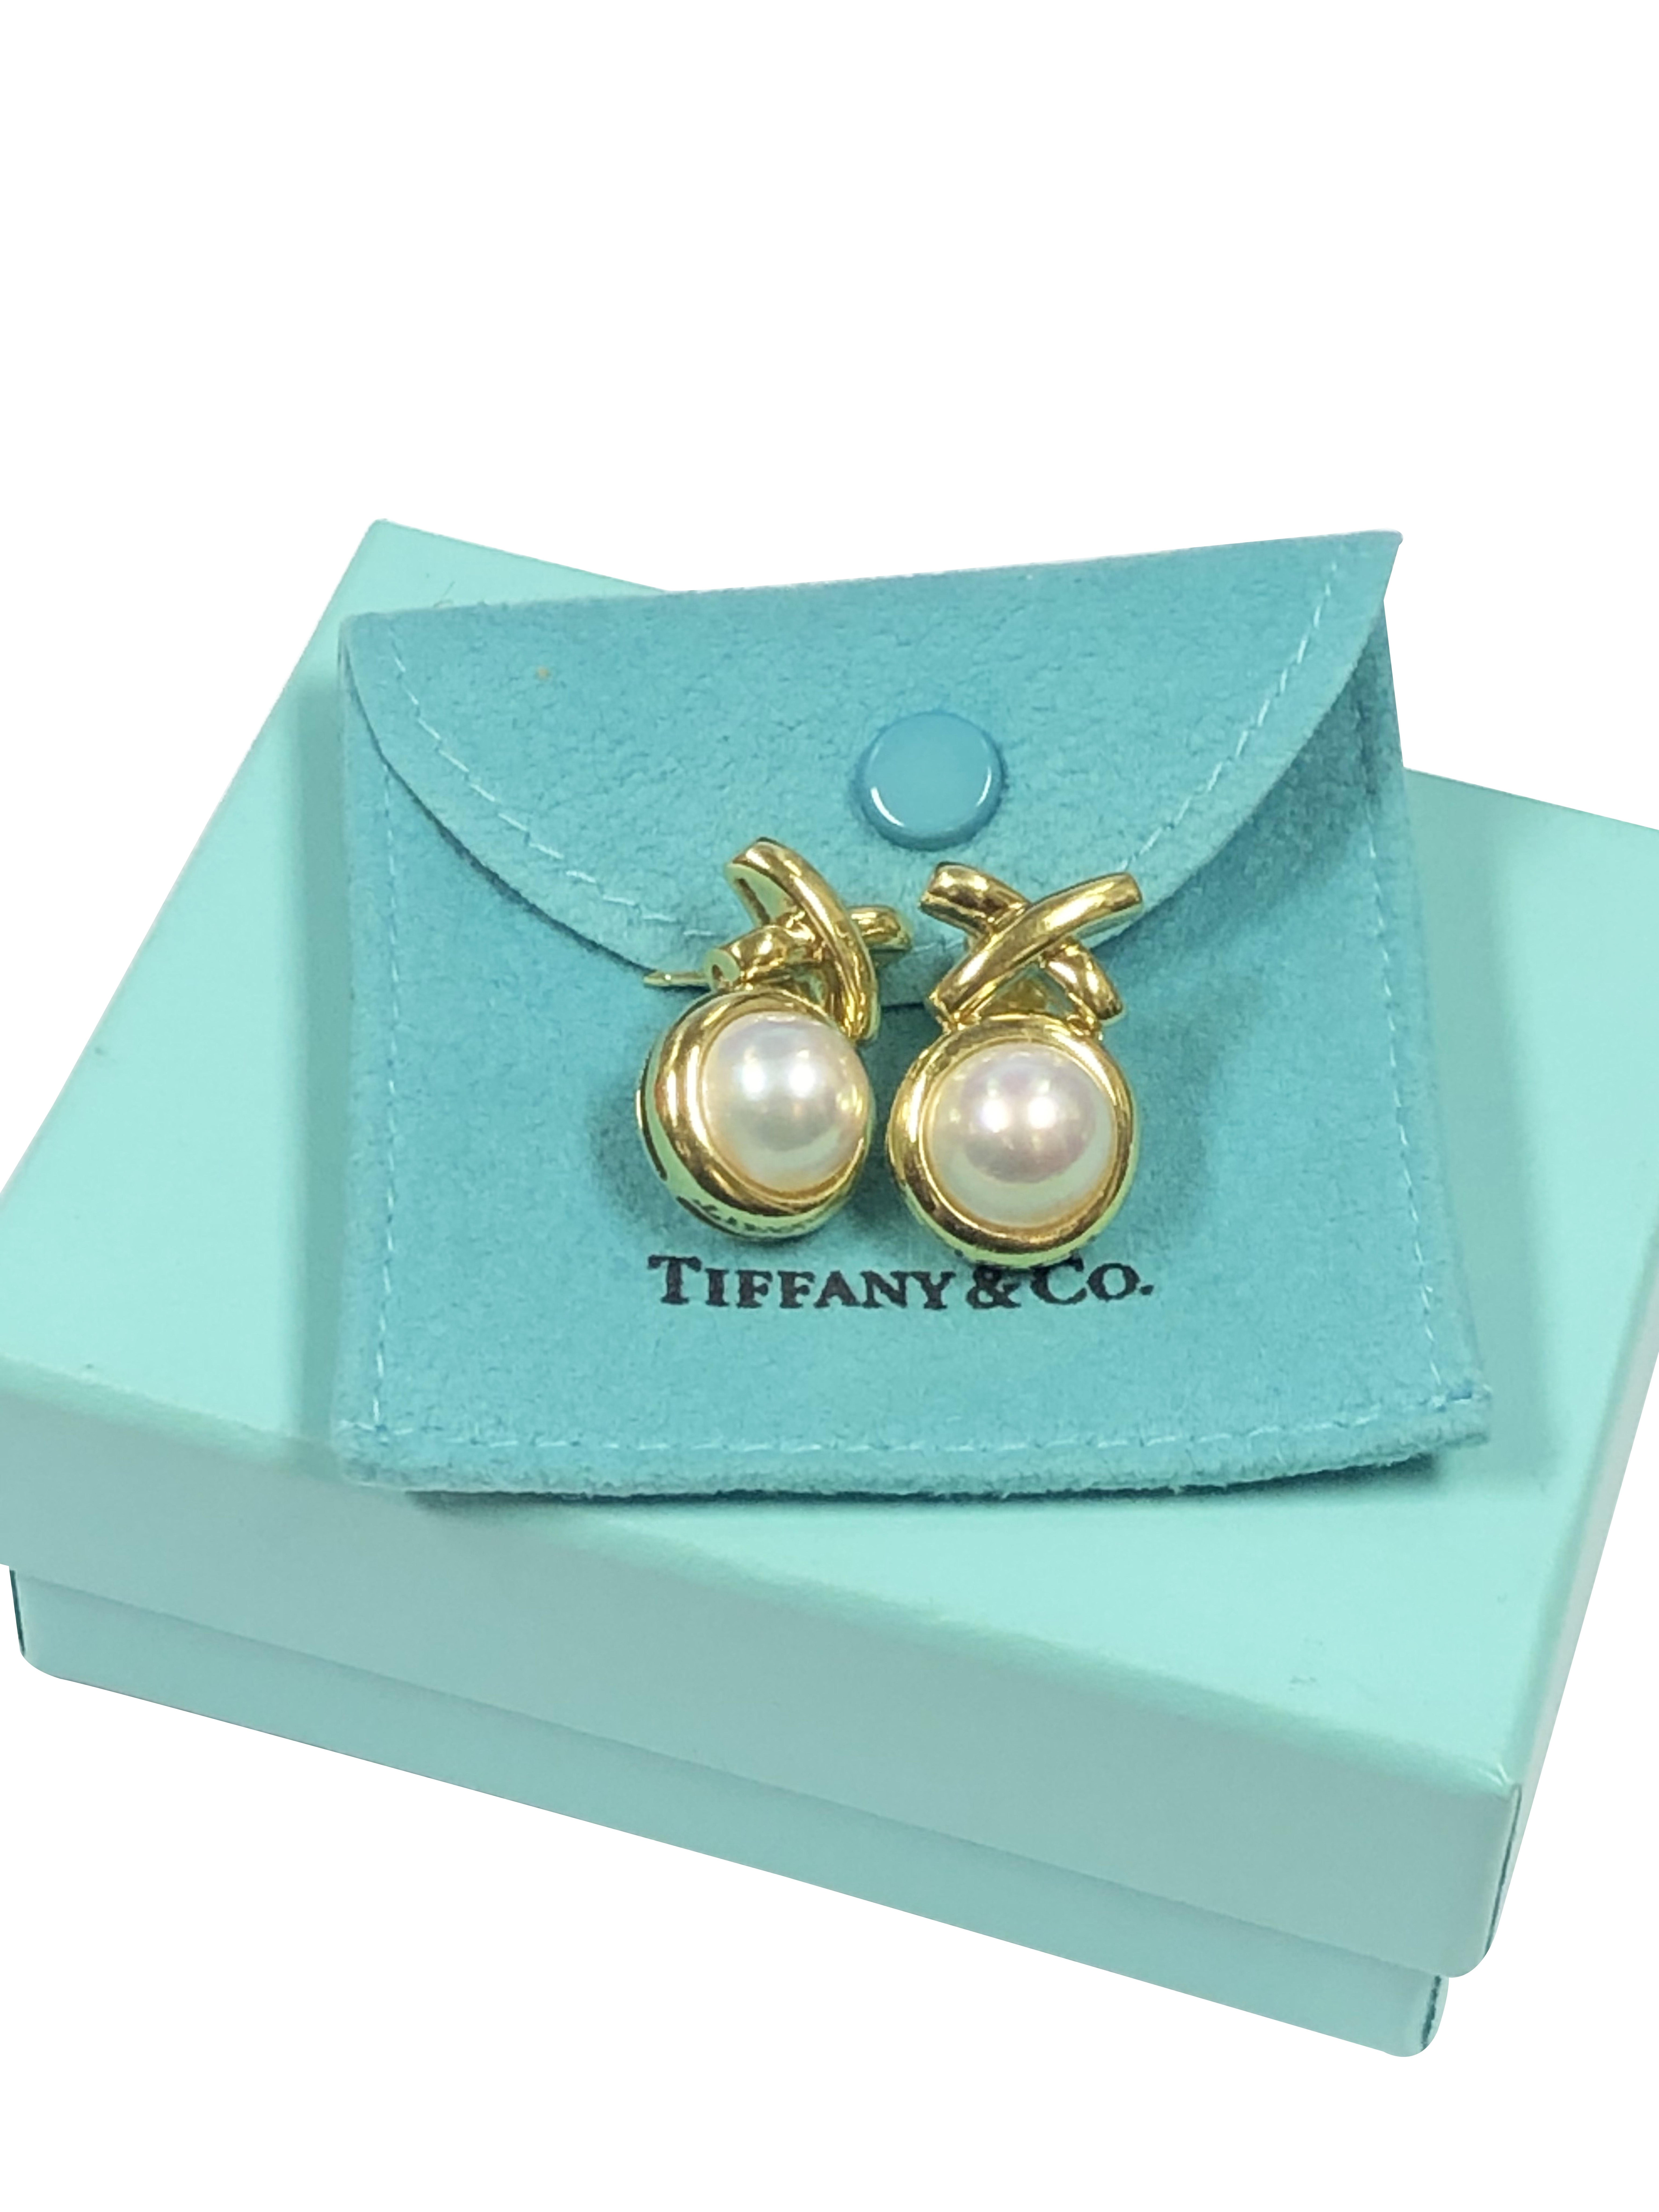 Circa 2010 Paloma Picasso pour Tiffany & Company Boucles d'oreilles de la collection X en or jaune 18K, mesurant 1 pouce de longueur X 5/8 pouce de largeur, serties d'un 10 M.M. Perle de Mabe de couleur et de lustre très fins. Les post backs sont